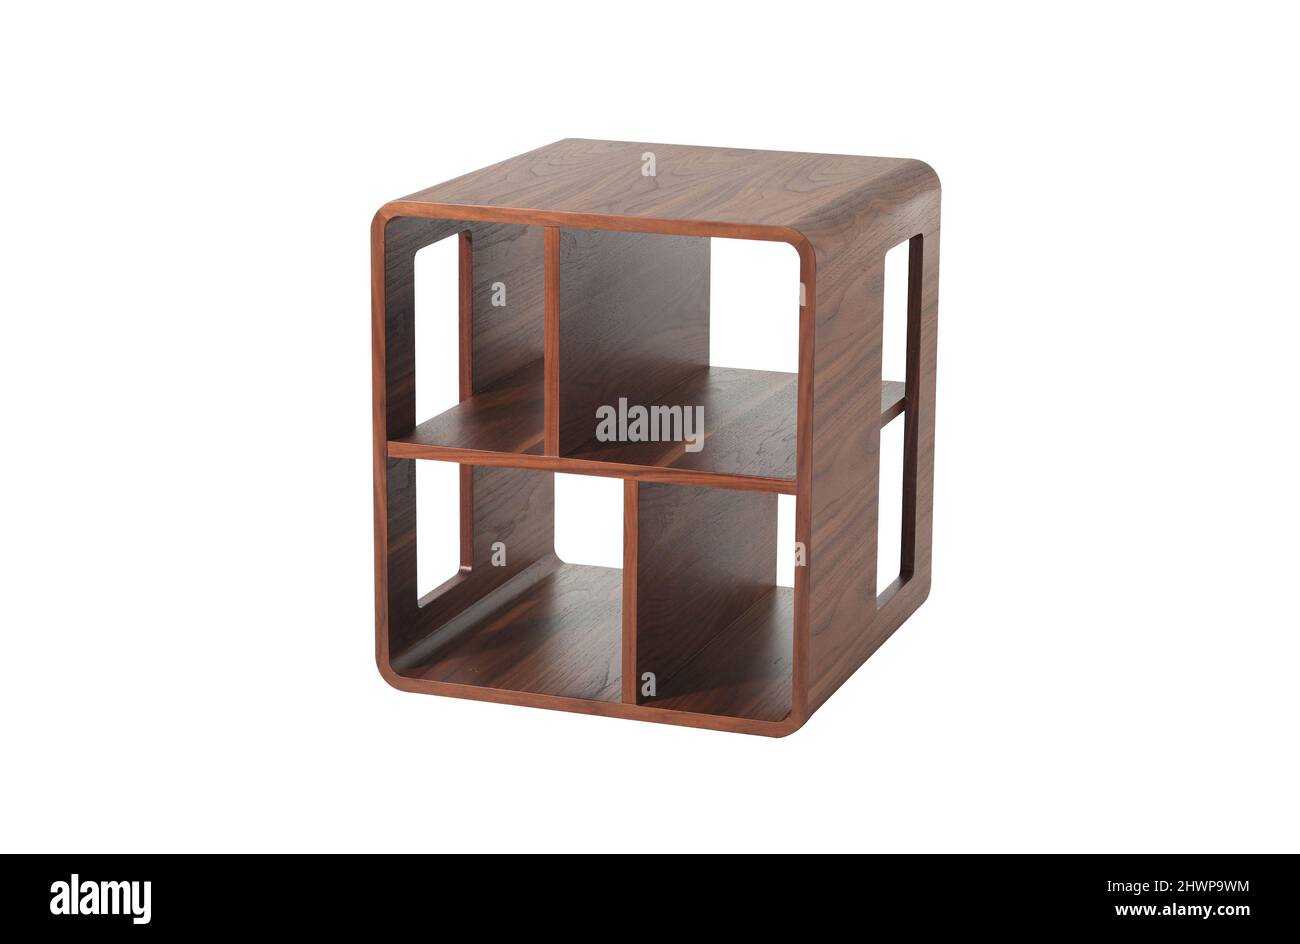 Table moderne en bois de forme carrée avec inserts de rangement Banque D'Images